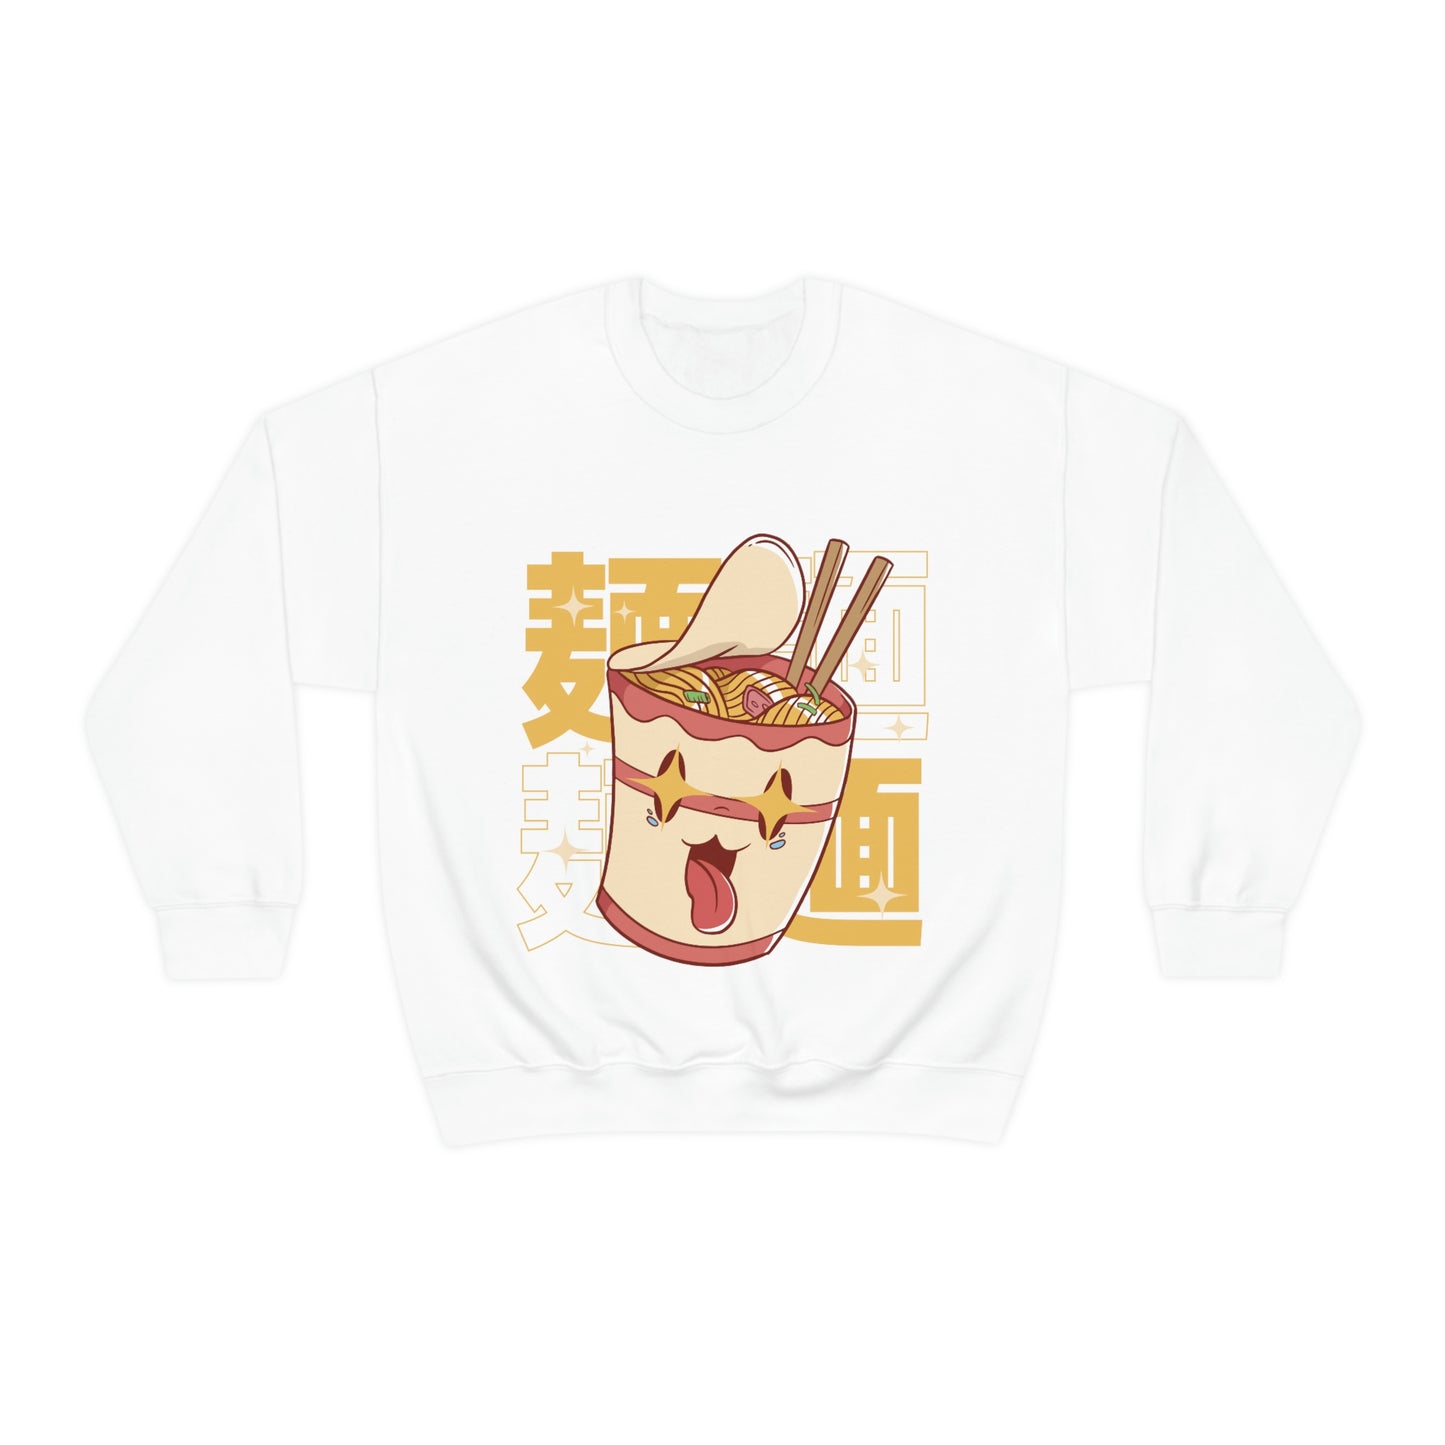 Kawaii Sweatshirt, Kawaii Clothing, Kawaii Clothes, Yami Kawaii Aesthetic, Pastel Kawaii Sweatshirt WOK Sweater Sweatshirt